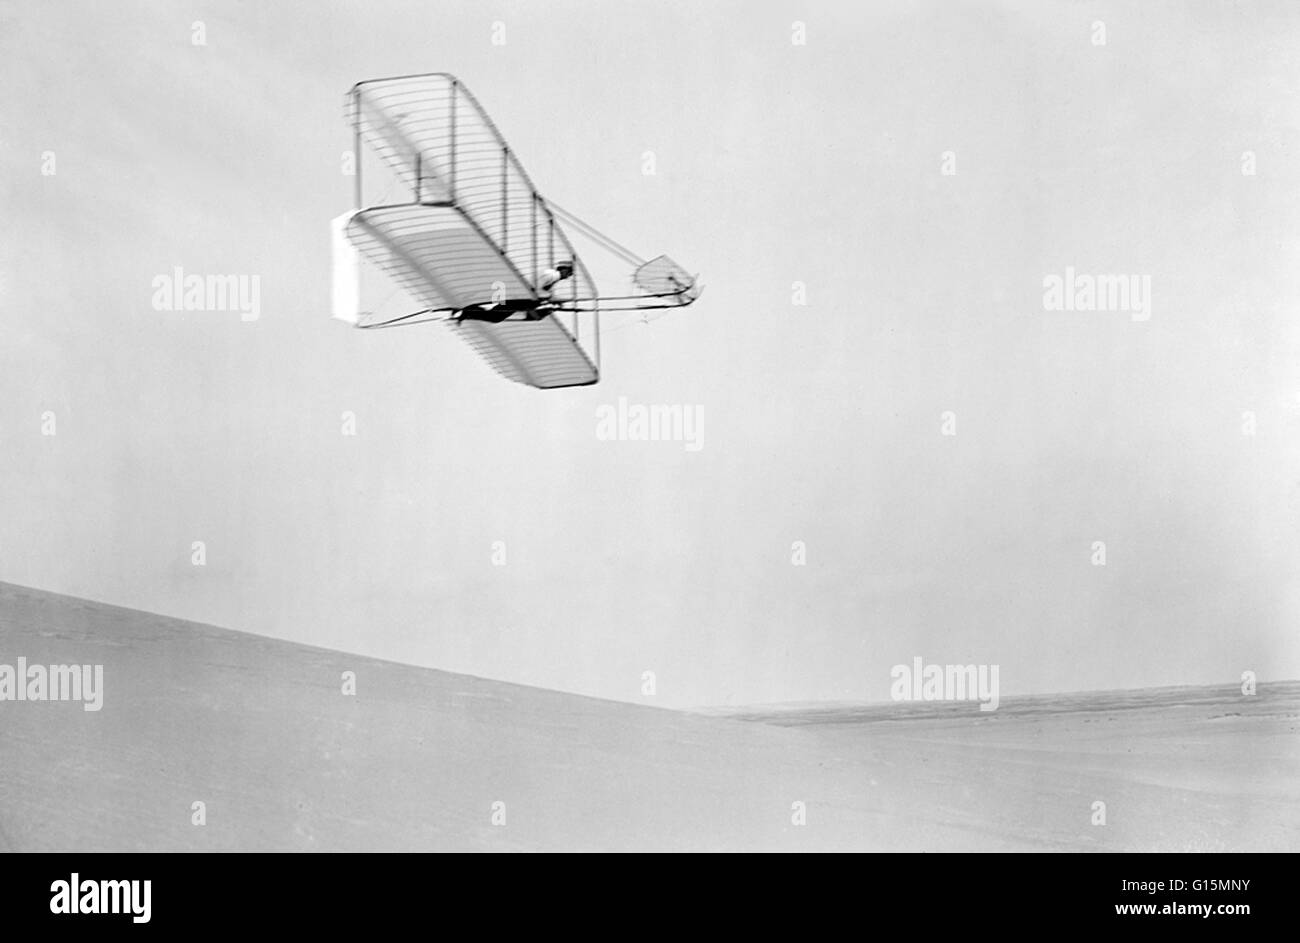 Wilbur Wright di pilotaggio test di un aliante in ottobre 1902 a Kill Devil Hill, Kitty Hawk, Carolina del Nord, America. Questi voli di prova lungo con galleria del vento esperimenti ammessi Wilbur ed Orville Wright di costruire il primo volo di aeromobili, whic Foto Stock